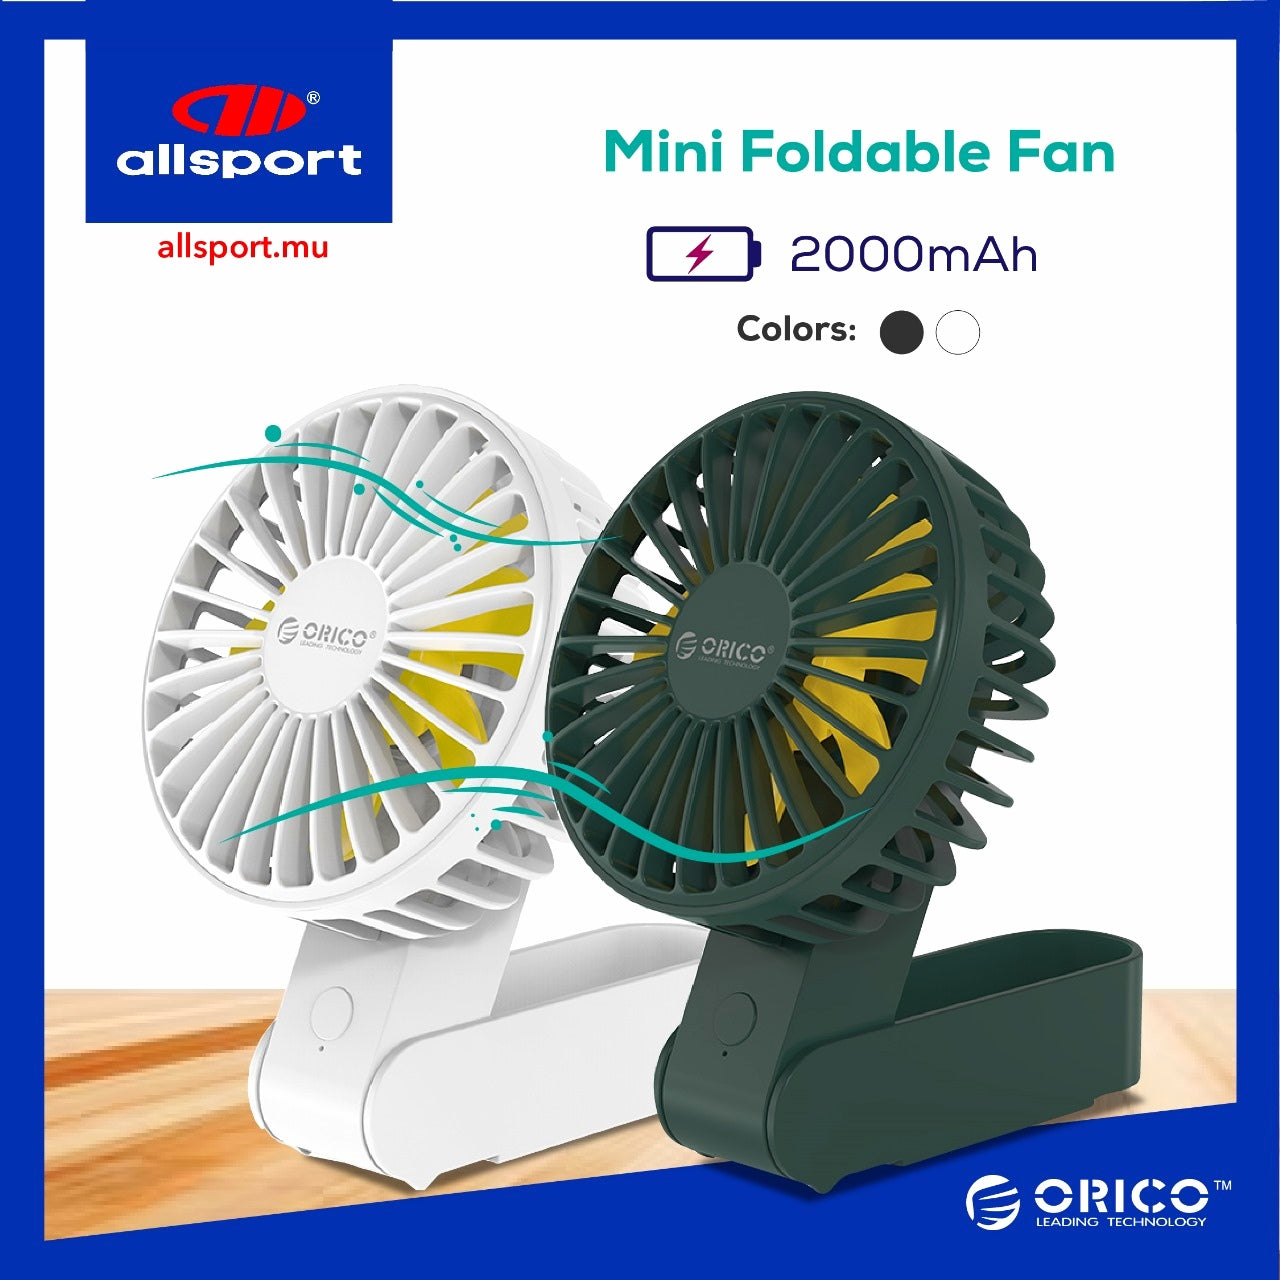 Mini Foldable Fan 2000mAh